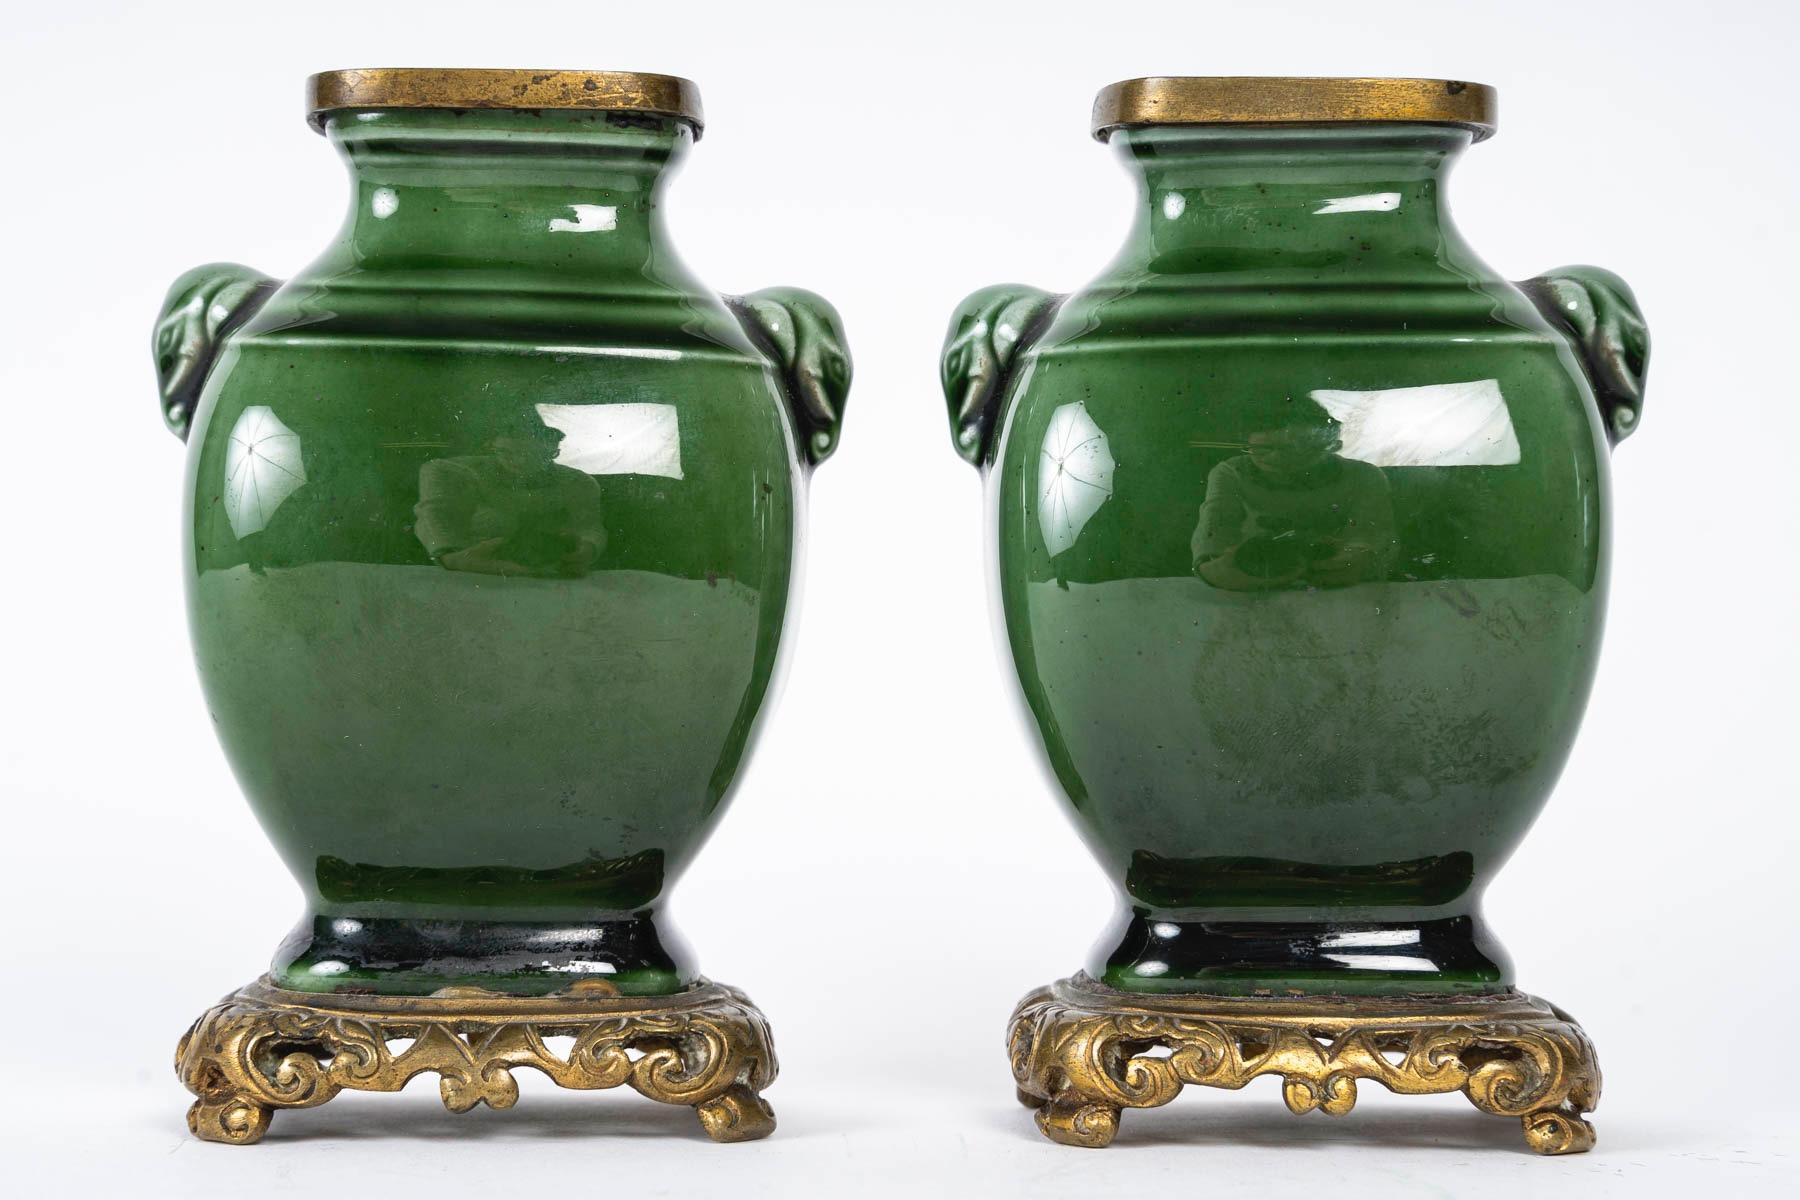 Theodore Deck (1823-1891) 
Paire de vases miniatures en faïence émaillée vert foncé, moulés dans le goût archaïque chinois.
Des anses en forme de têtes d'éléphants.
Avec des montures en bronze doré ajouré à la base et au bord.
Marque imprimée TH.D